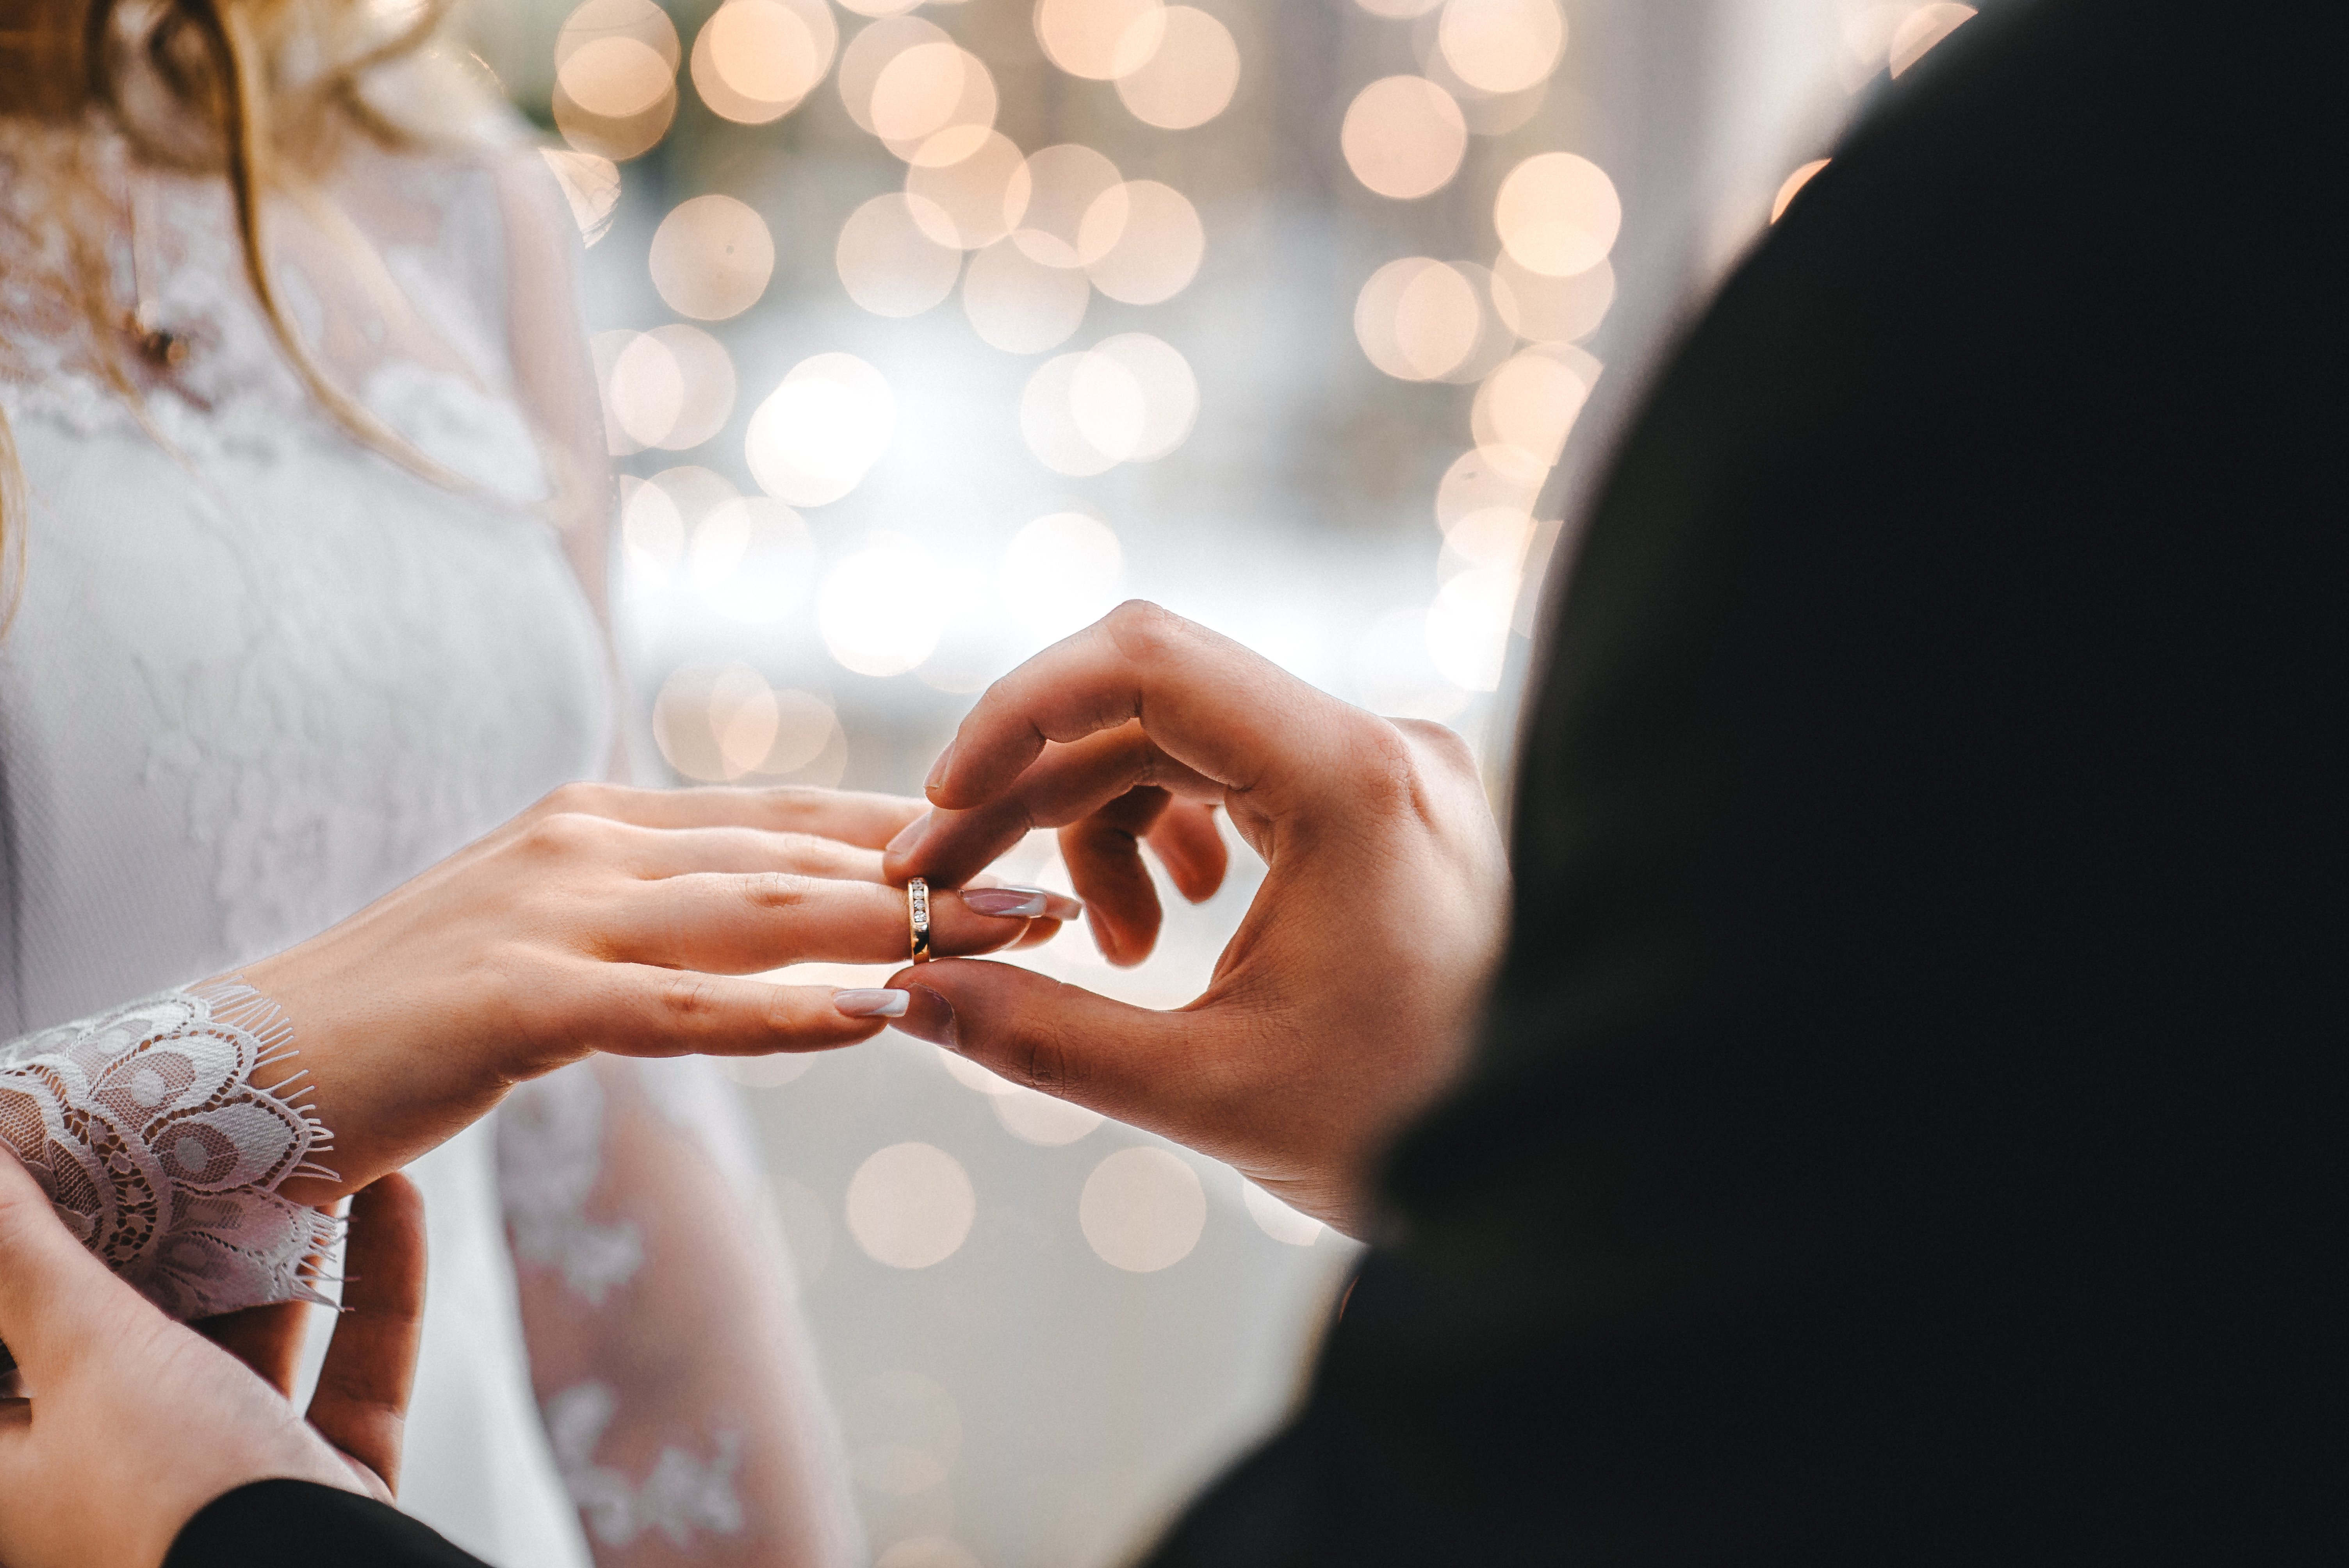 Mann, der eine Frau Verlobungsring gibt | Quelle: Shutterstock